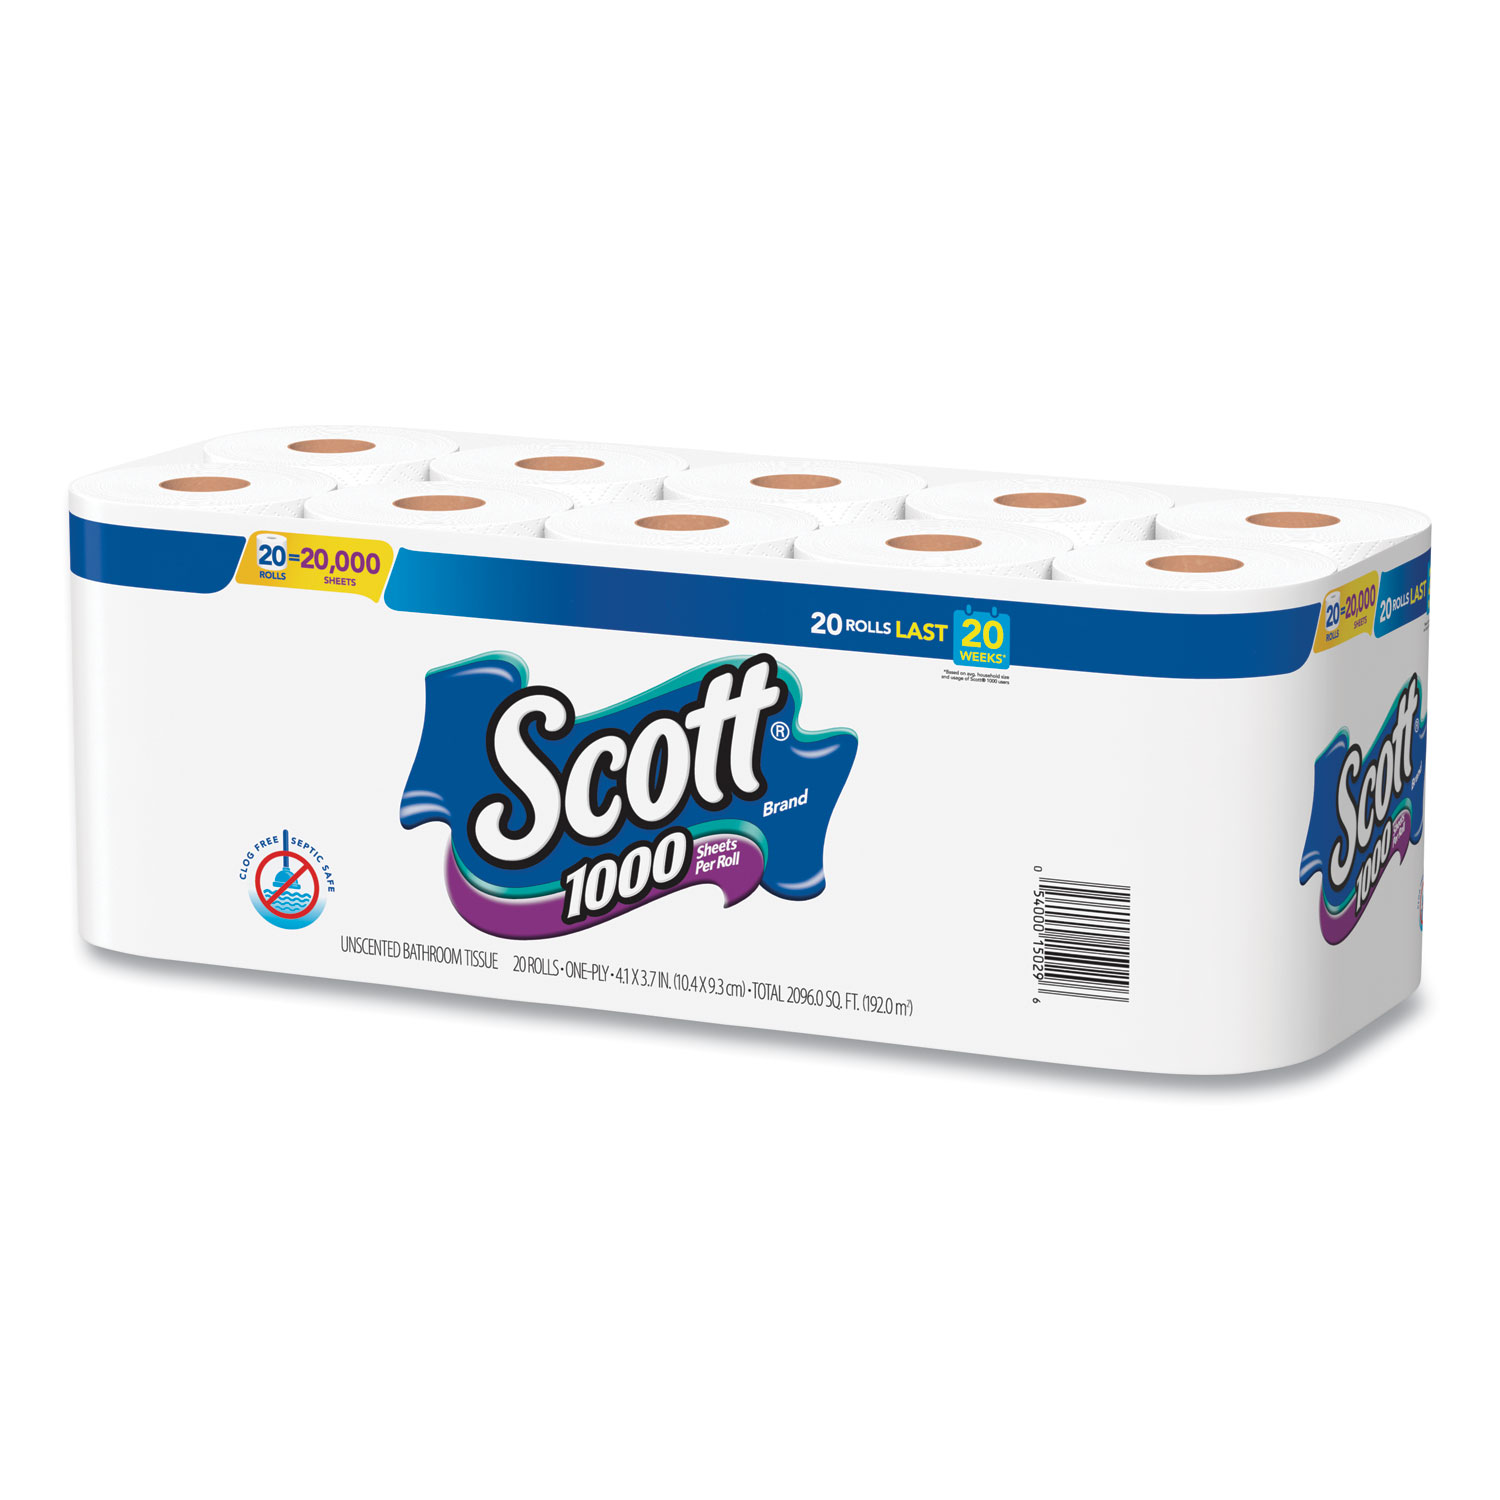 SafePro GEN2 1000-Feet 2-Ply White Toilet Paper (Tissue) Roll, 1